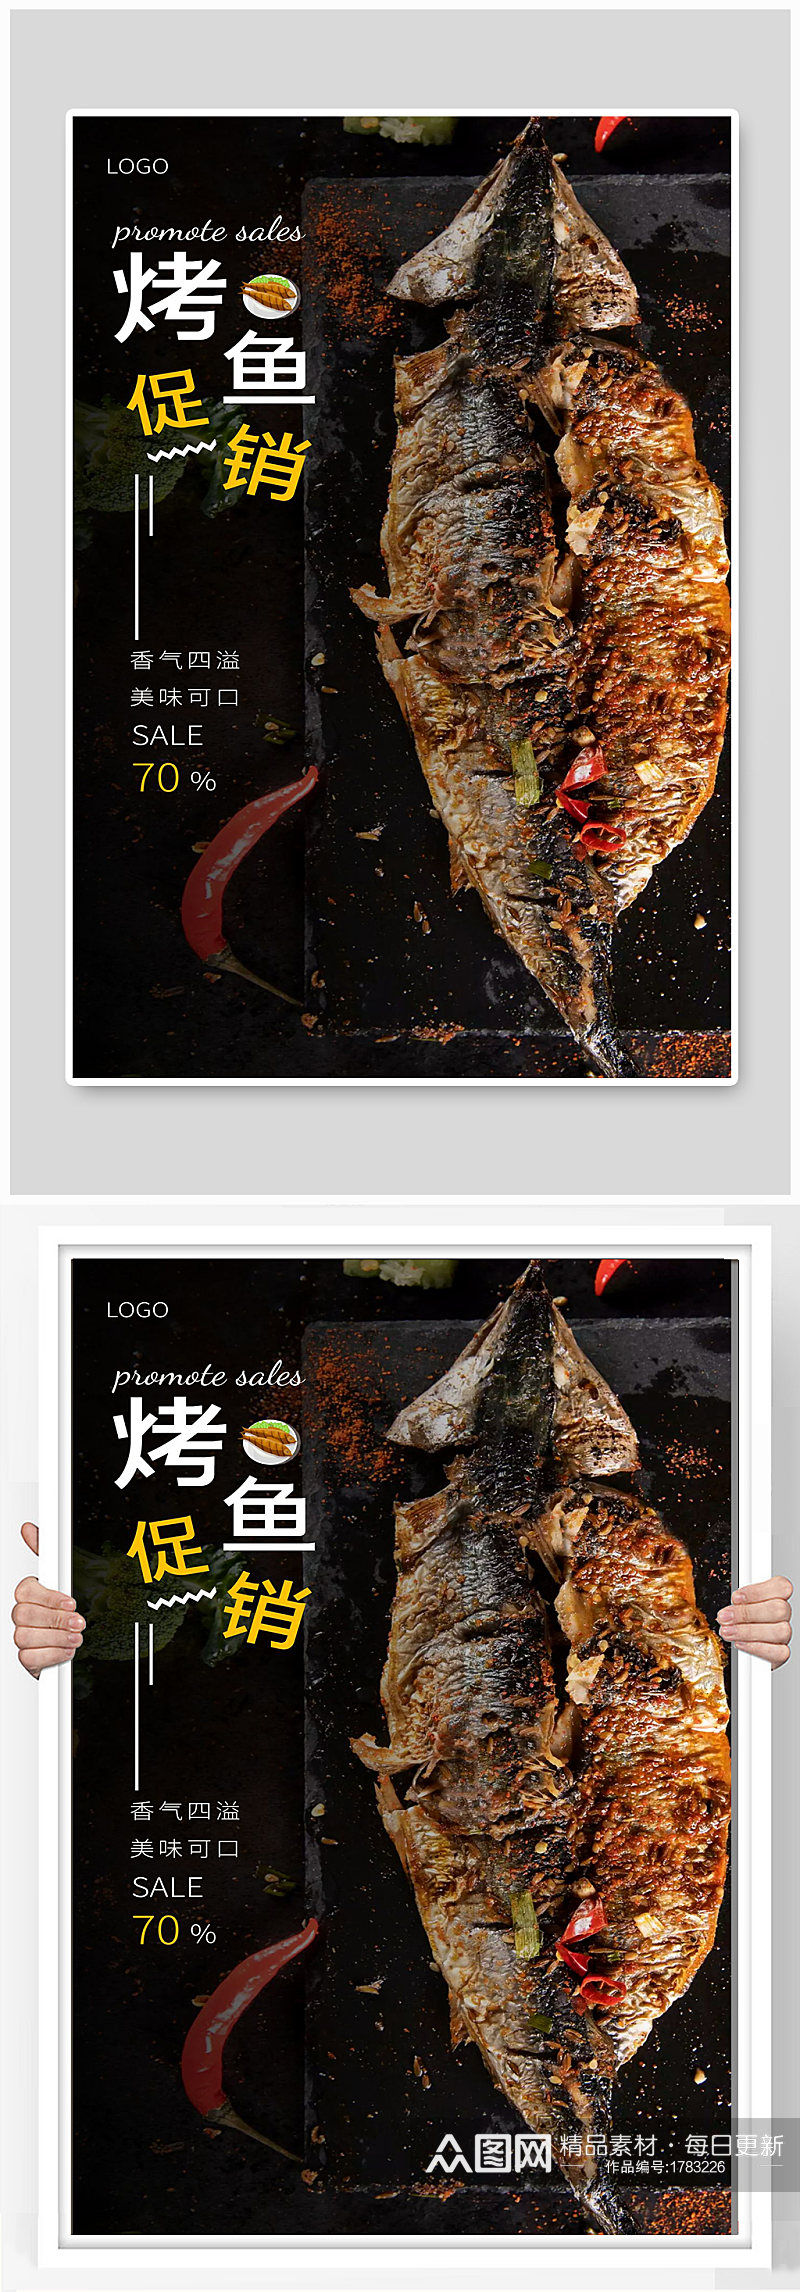 烤鱼宣传海报设计制作素材